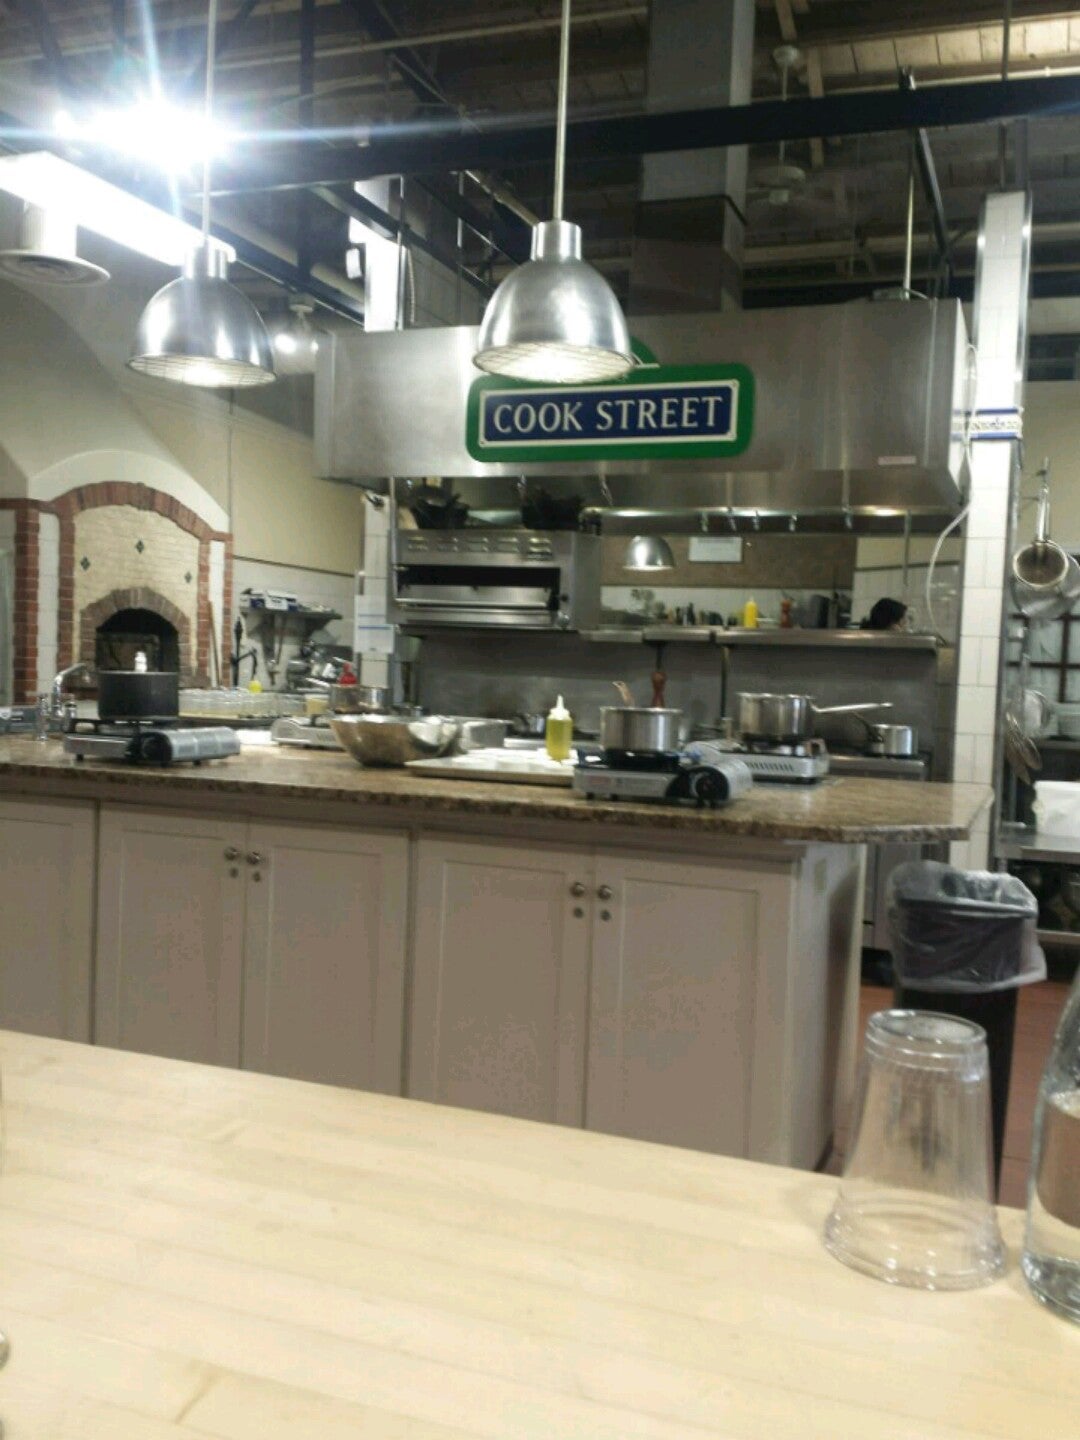 Cook Street School of Fine Cooking